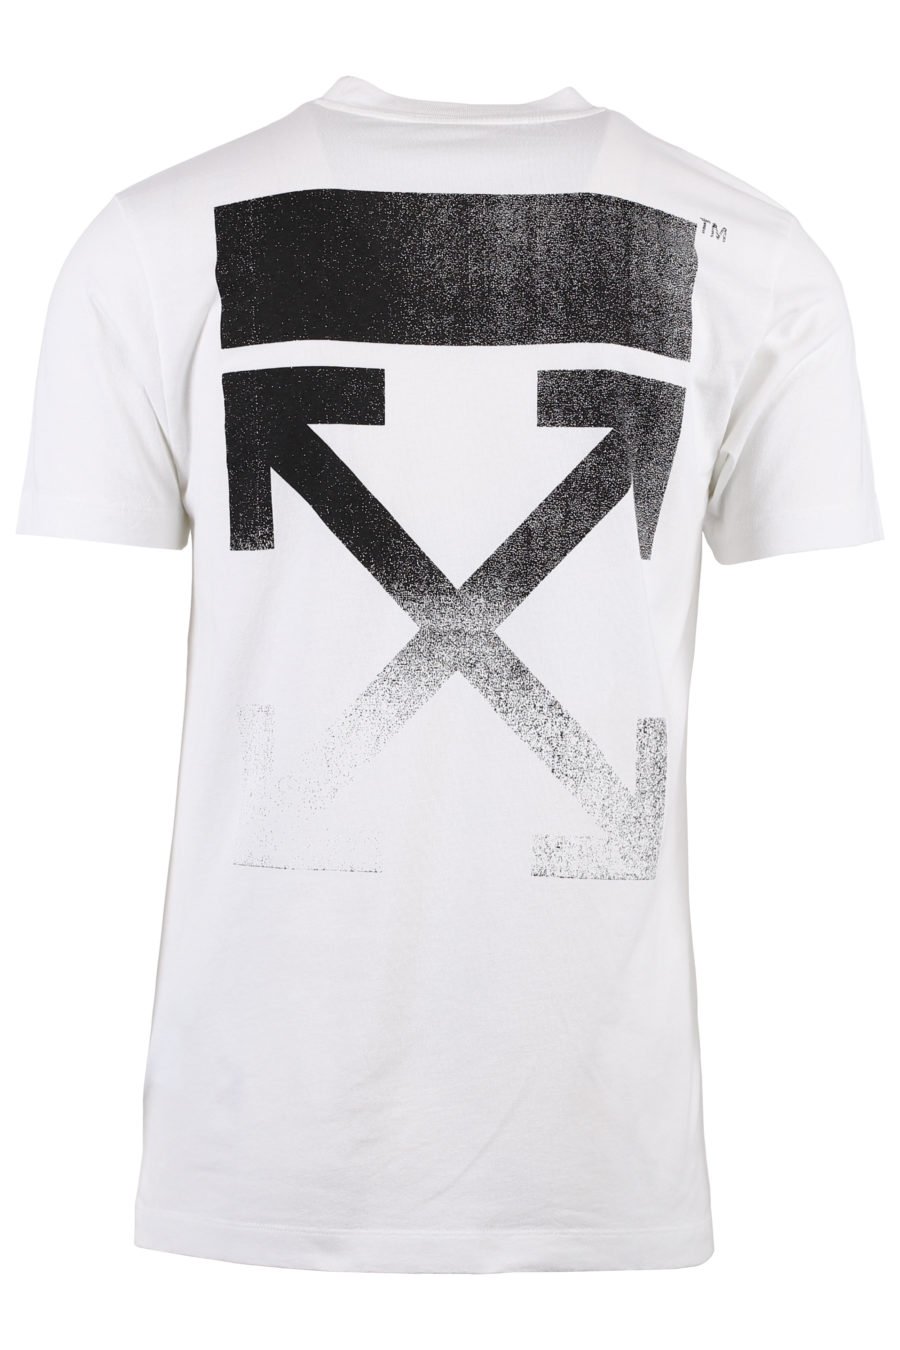 Weißes T-Shirt mit schwarzen Pfeilen im Farbverlauf - IMG 1363